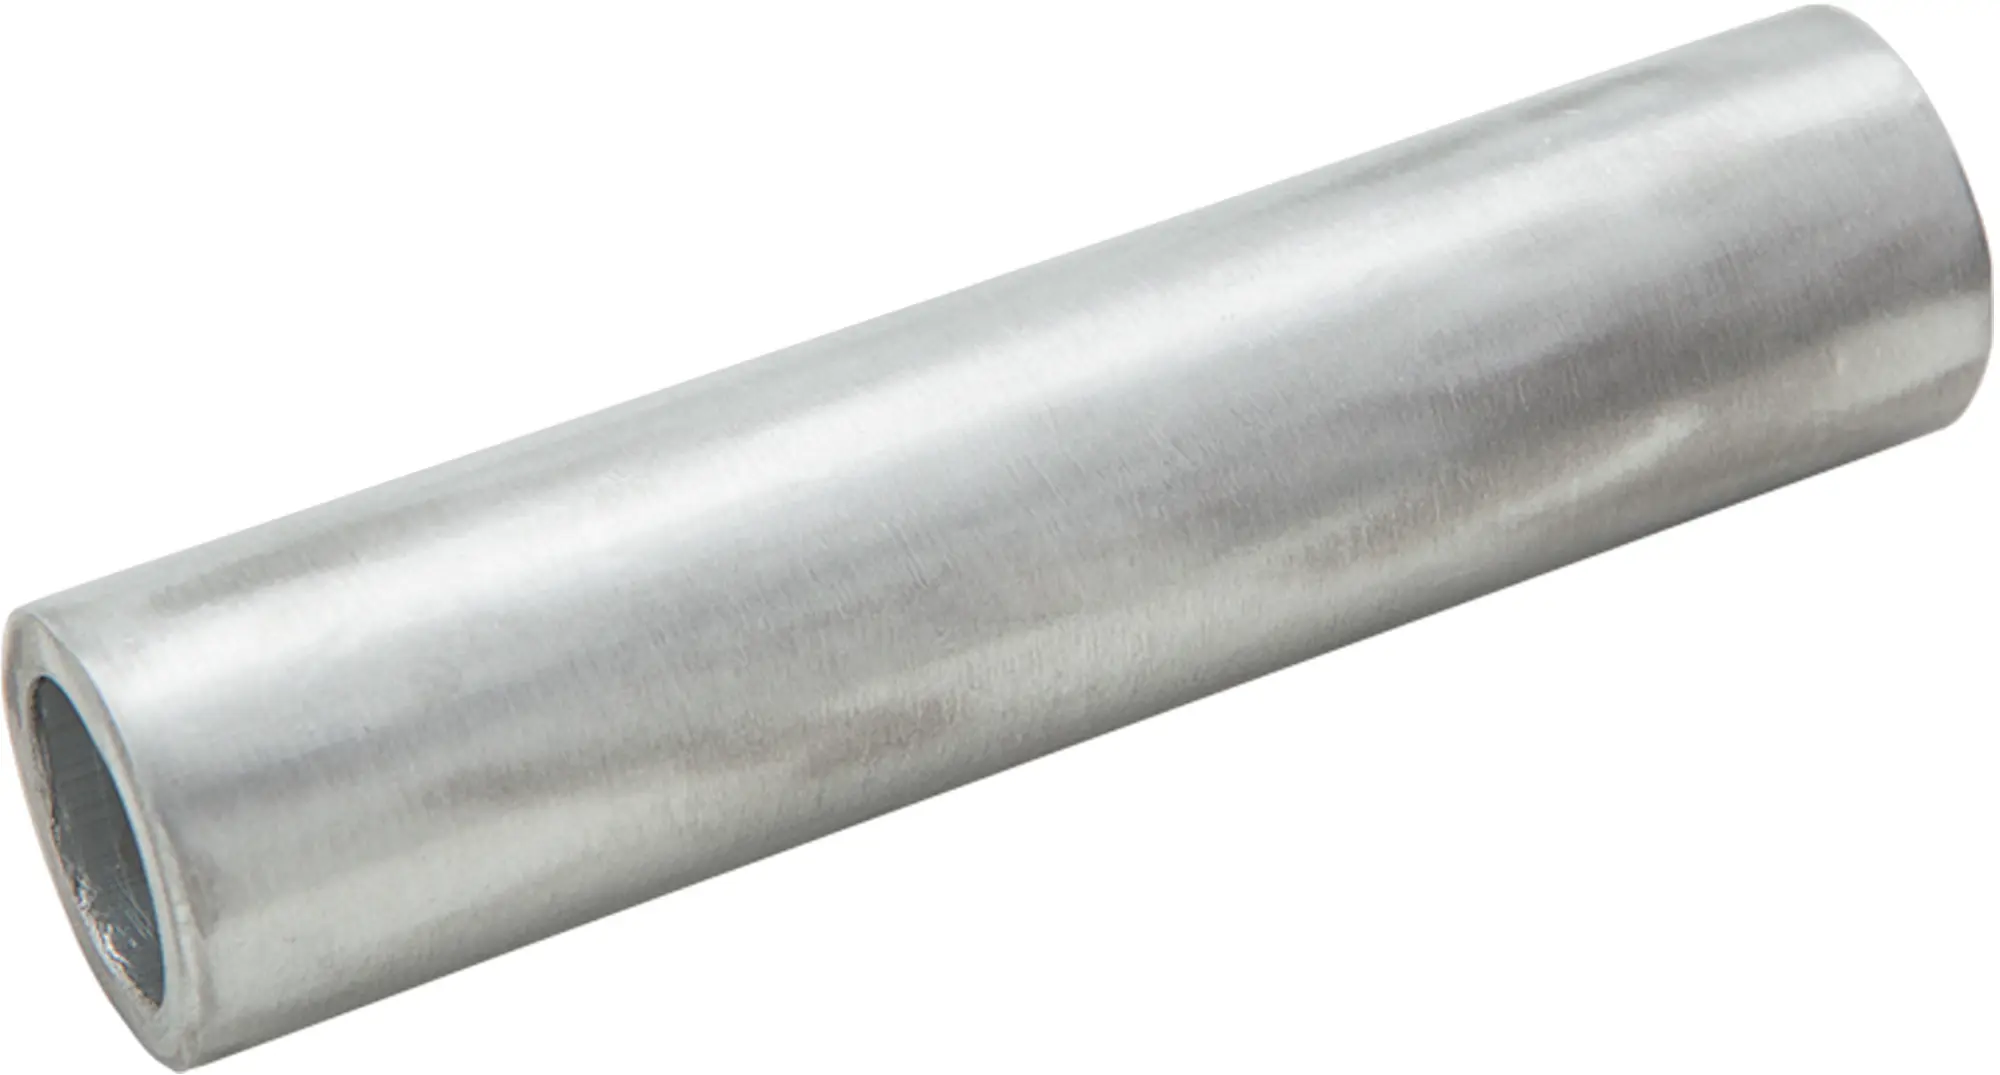 Гильза кабельная луженая Duwi ГМЛ 4-3 мм медь 5 шт. медная луженая кабельная гильза под опрессовку duwi